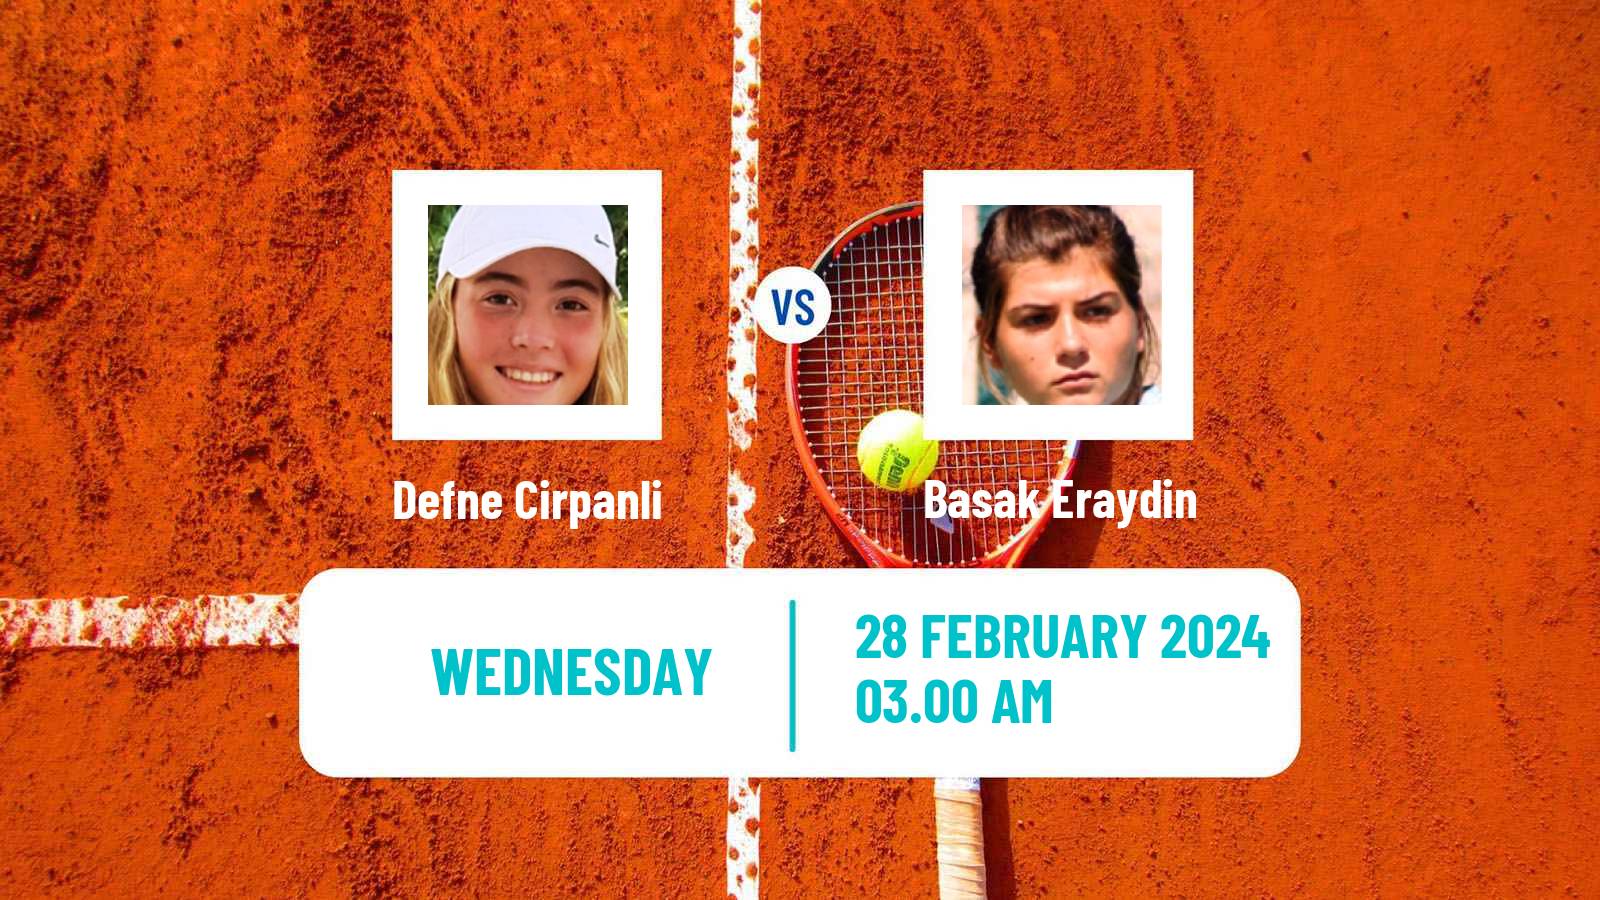 Tennis ITF W15 Antalya 3 Women Defne Cirpanli - Basak Eraydin